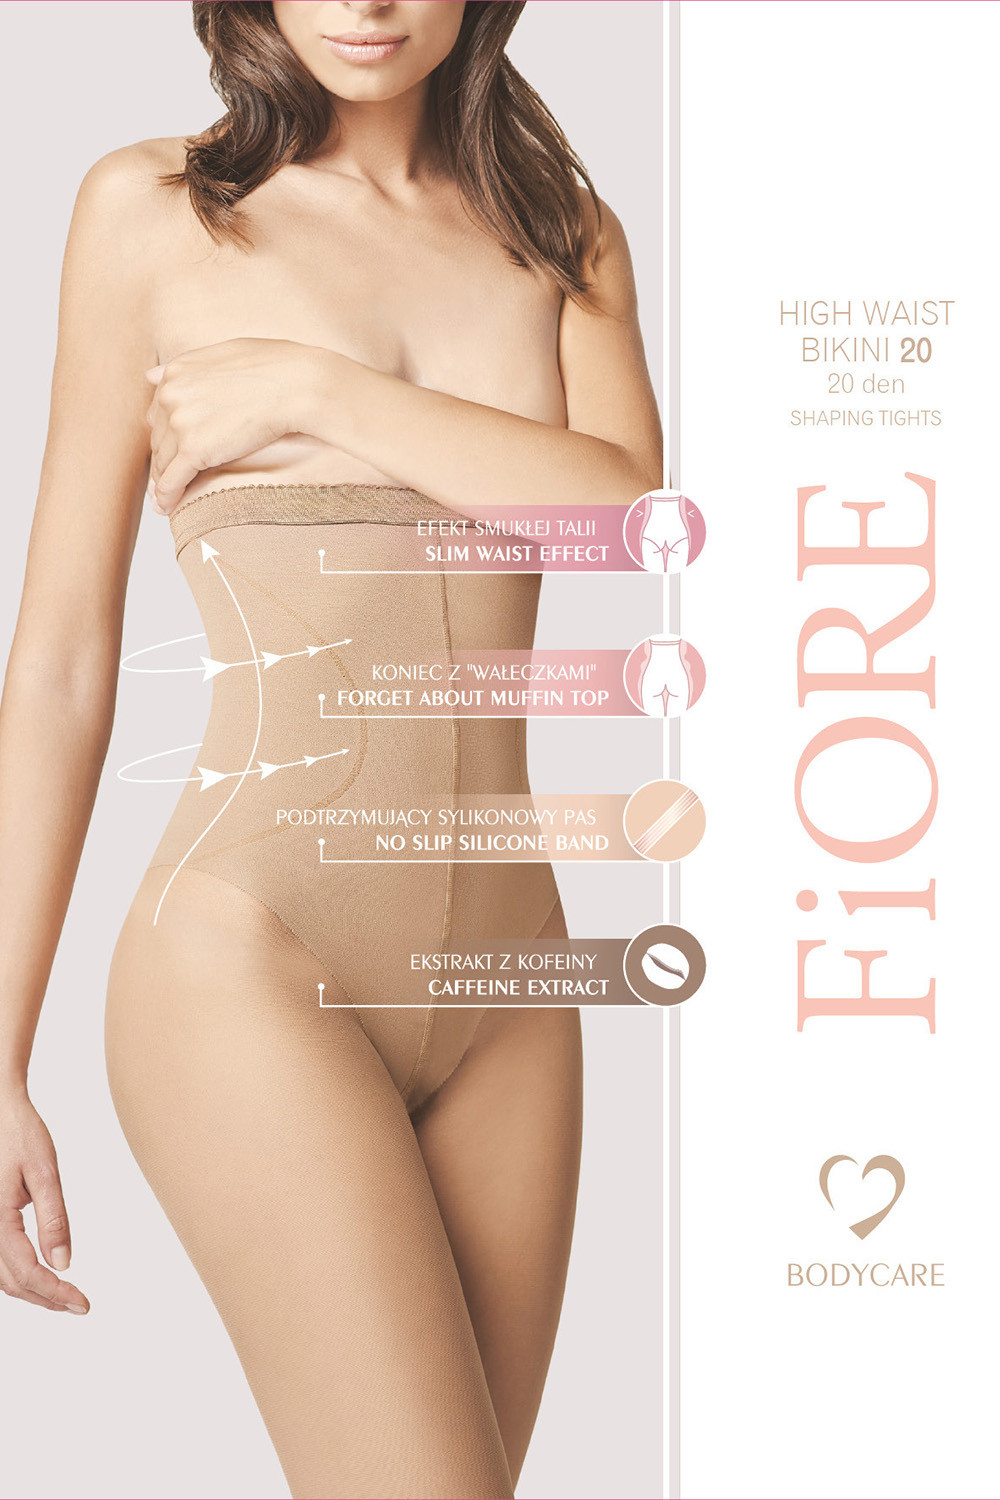 Fiore High Waist Bikini 20 den M5218 kolor:light natural 4-L